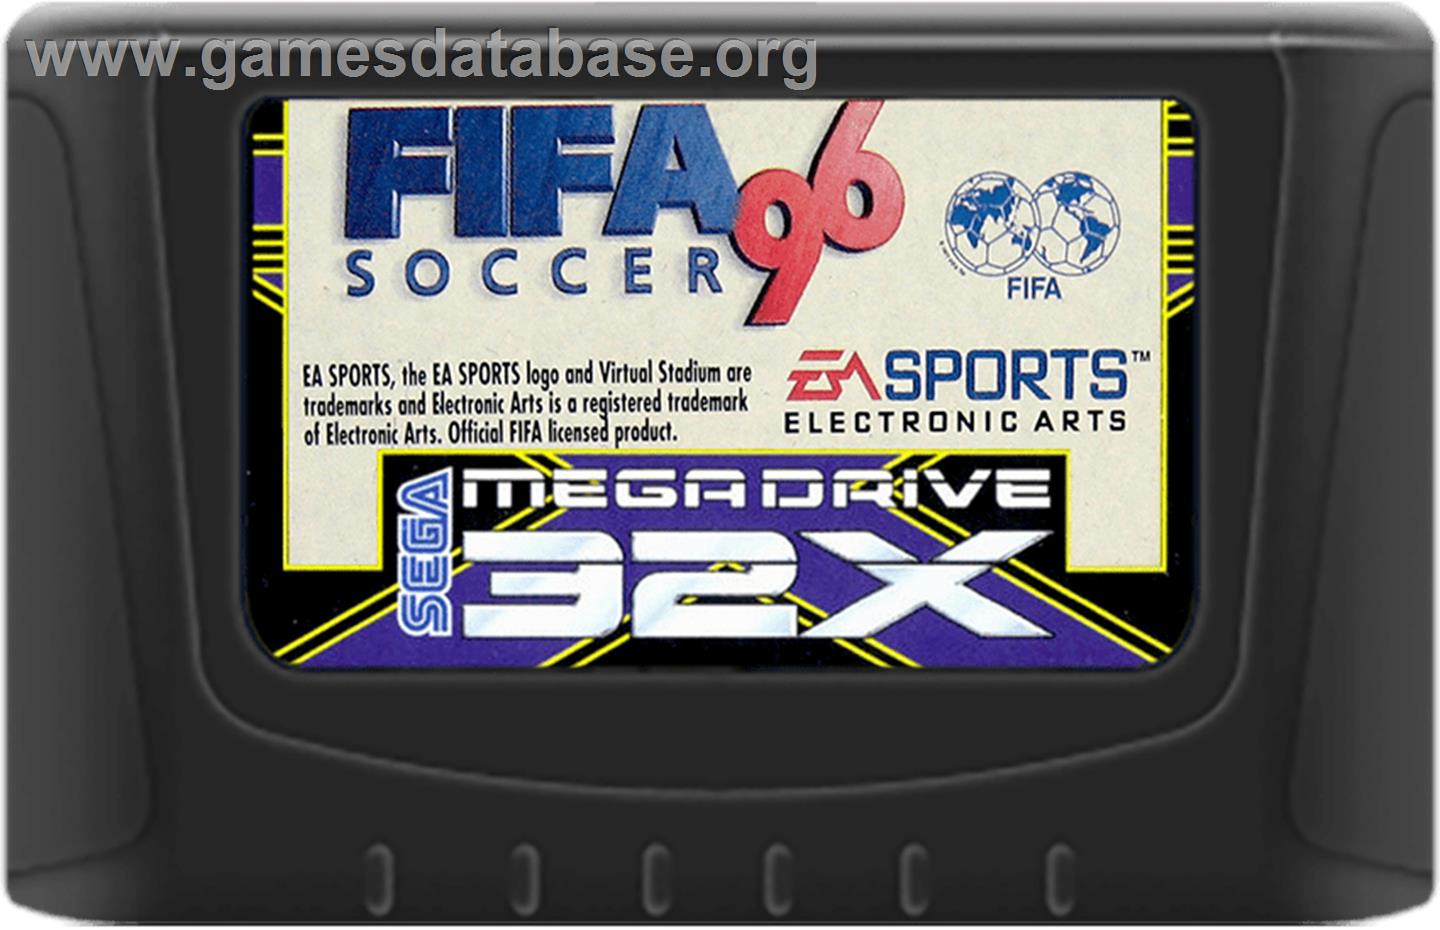 FIFA 96 - Sega 32X - Artwork - Cartridge